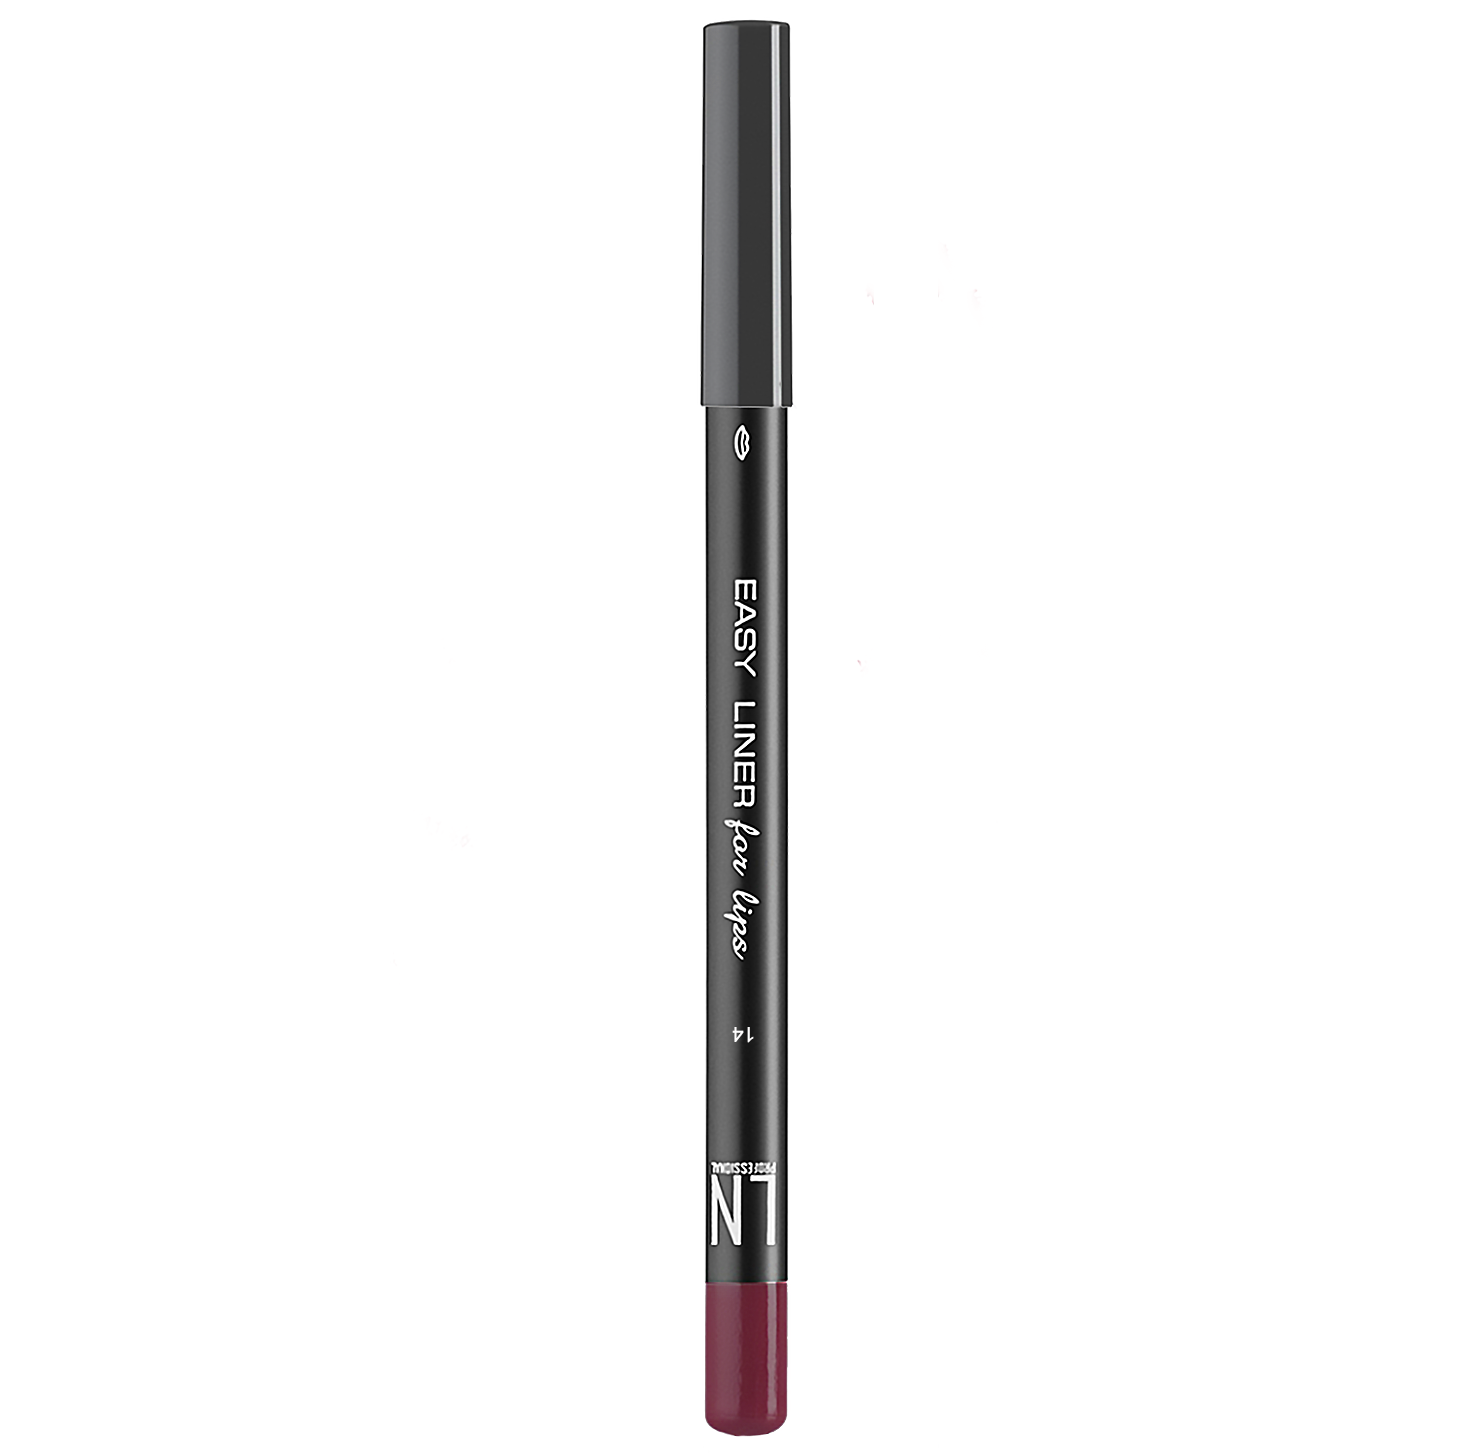 Олівець для губ LN Professional Easy Liner for Lips, відтінок 14, 1,7 г - фото 1